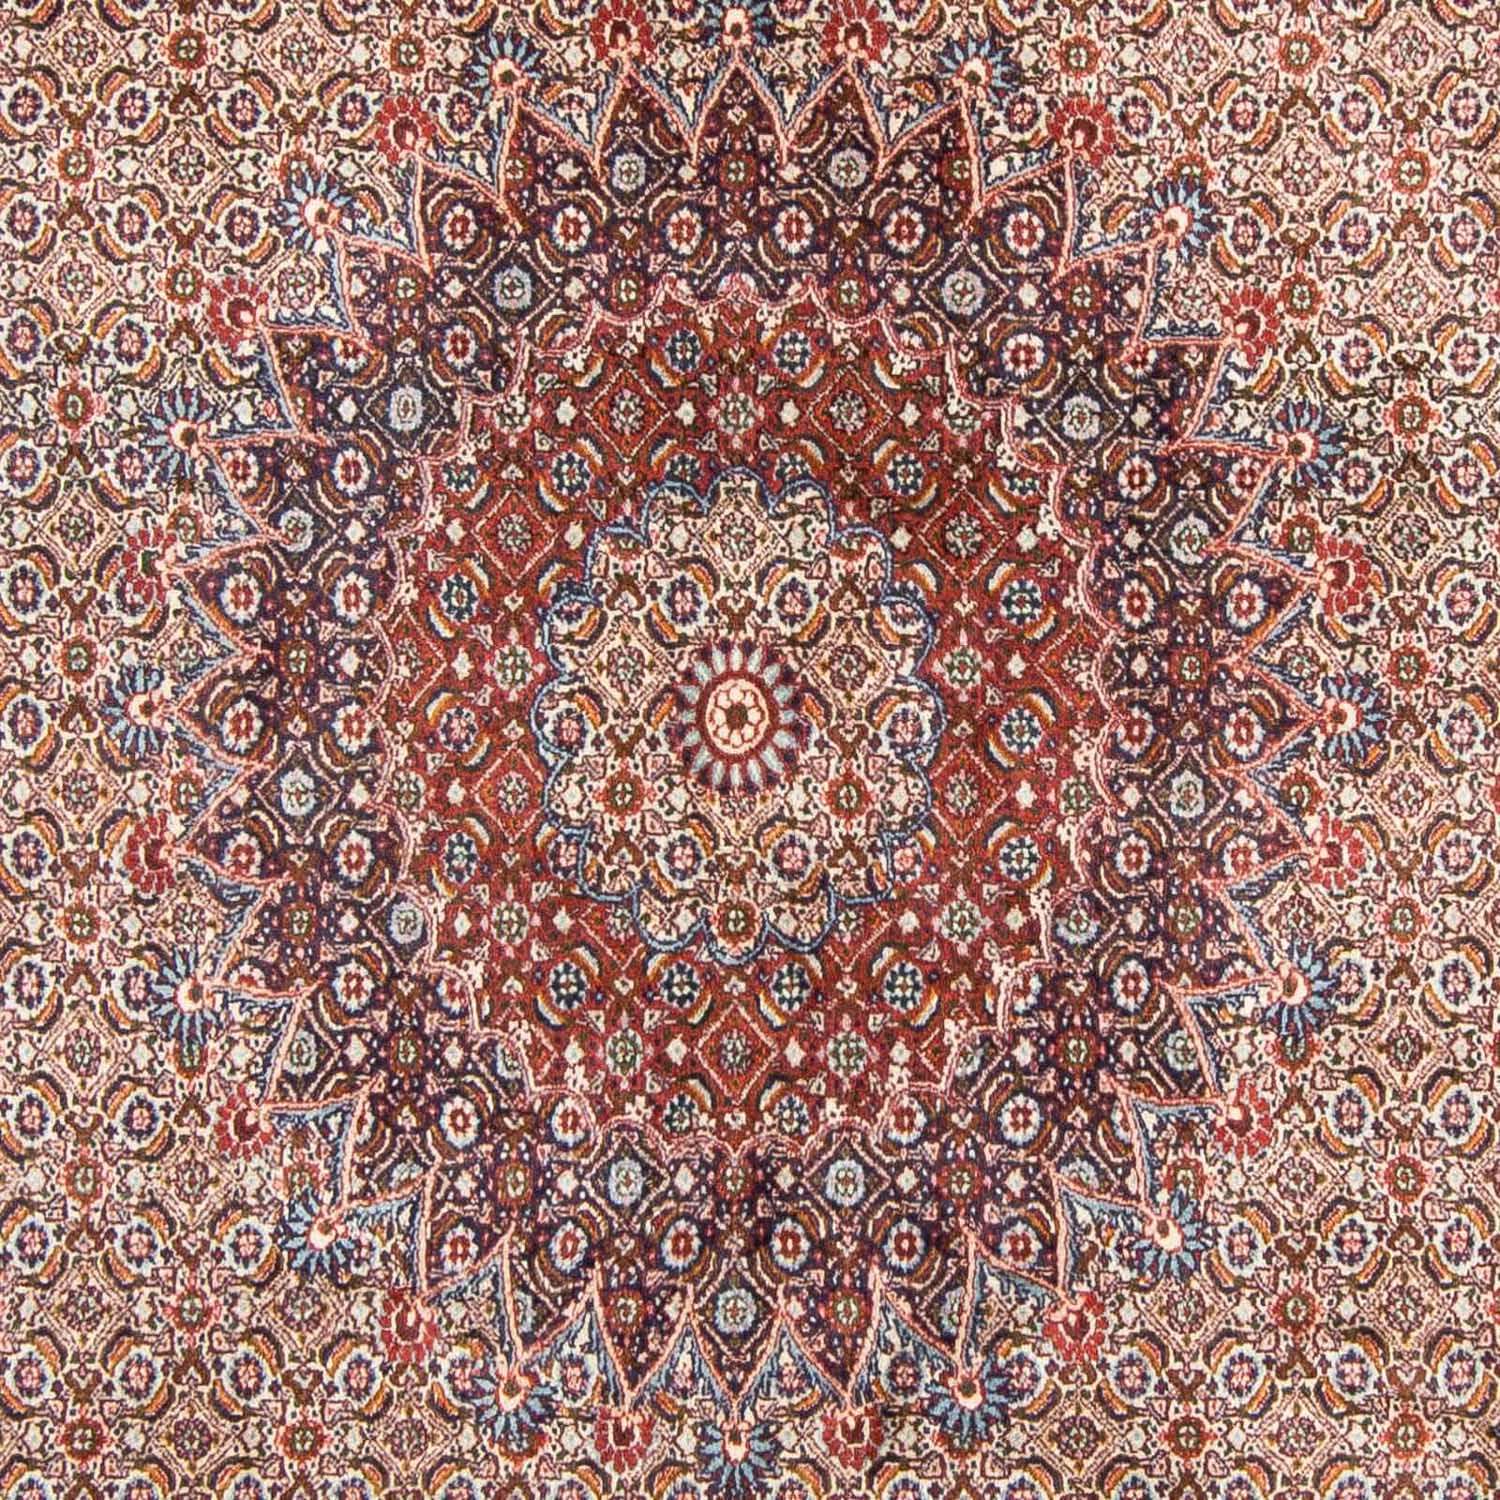 Tapete Persa - Clássico - 300 x 199 cm - vermelho claro